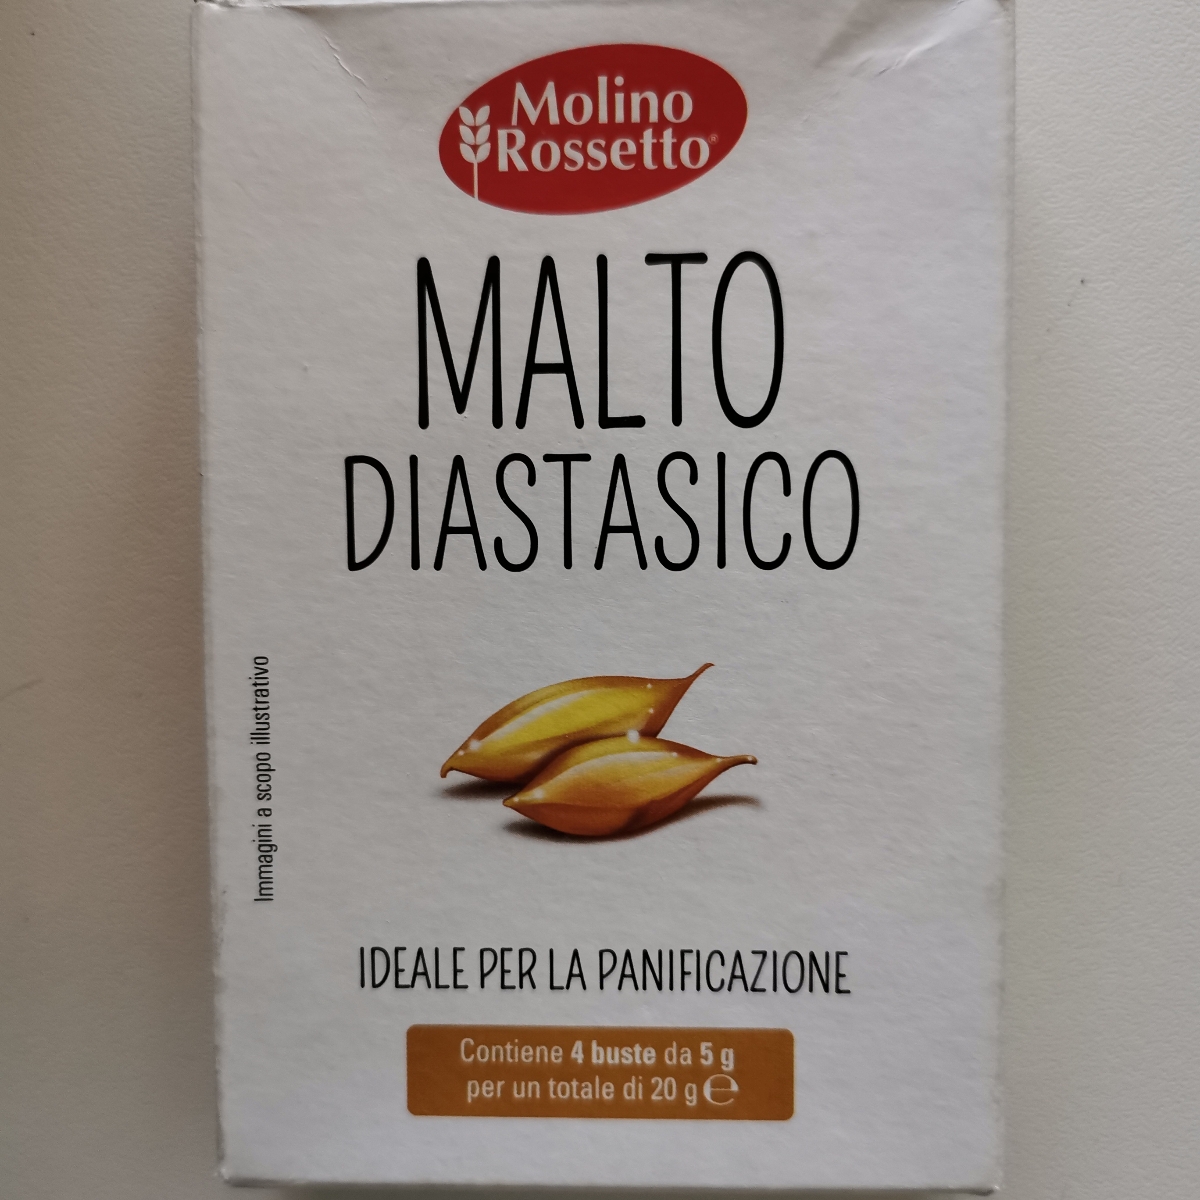 Molino Rossetto Malto diastasico Review